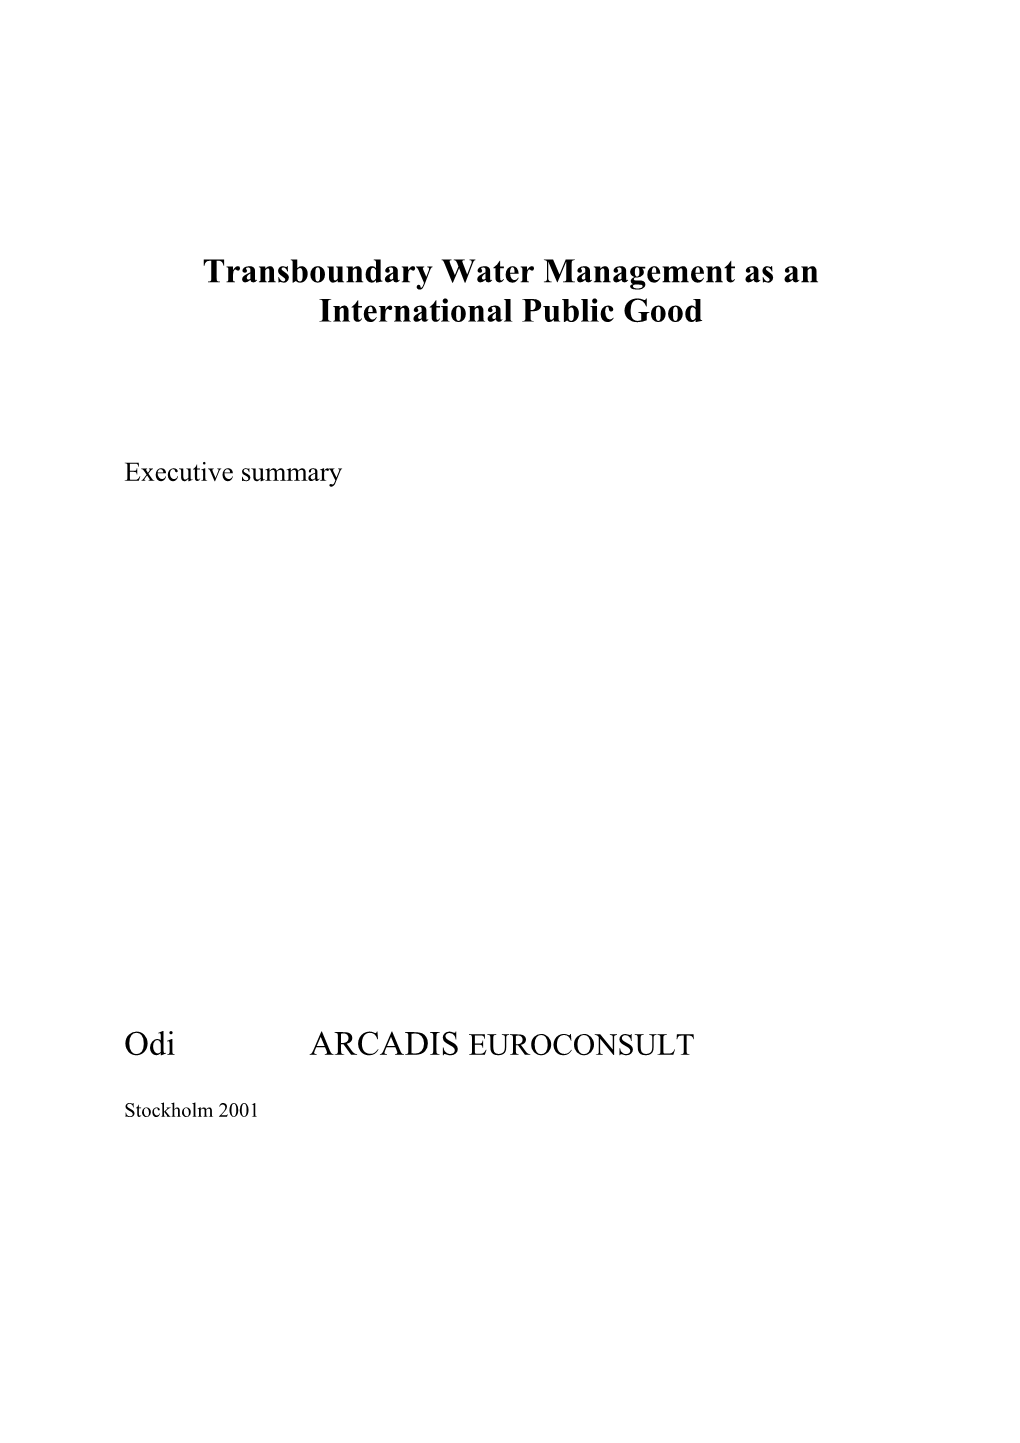 Transboundary Water Management As an International Public Good